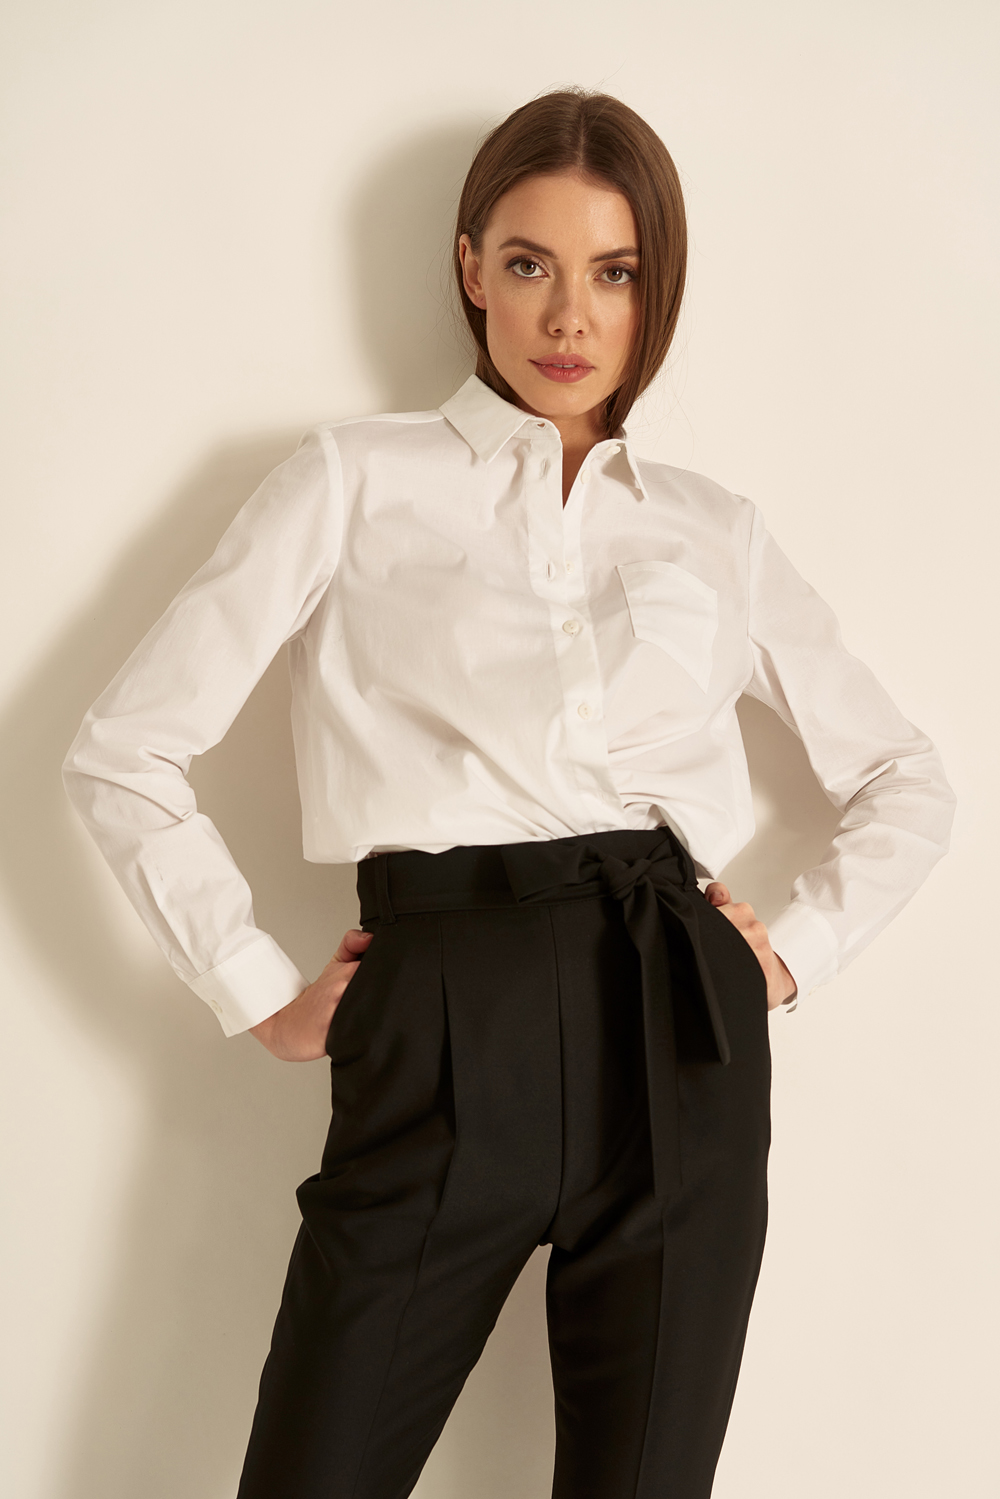 Базовая блузка. Асимметричная блузка. Офисные блузки асимметрия. Базовая блуза. Платья Натали Болгар.